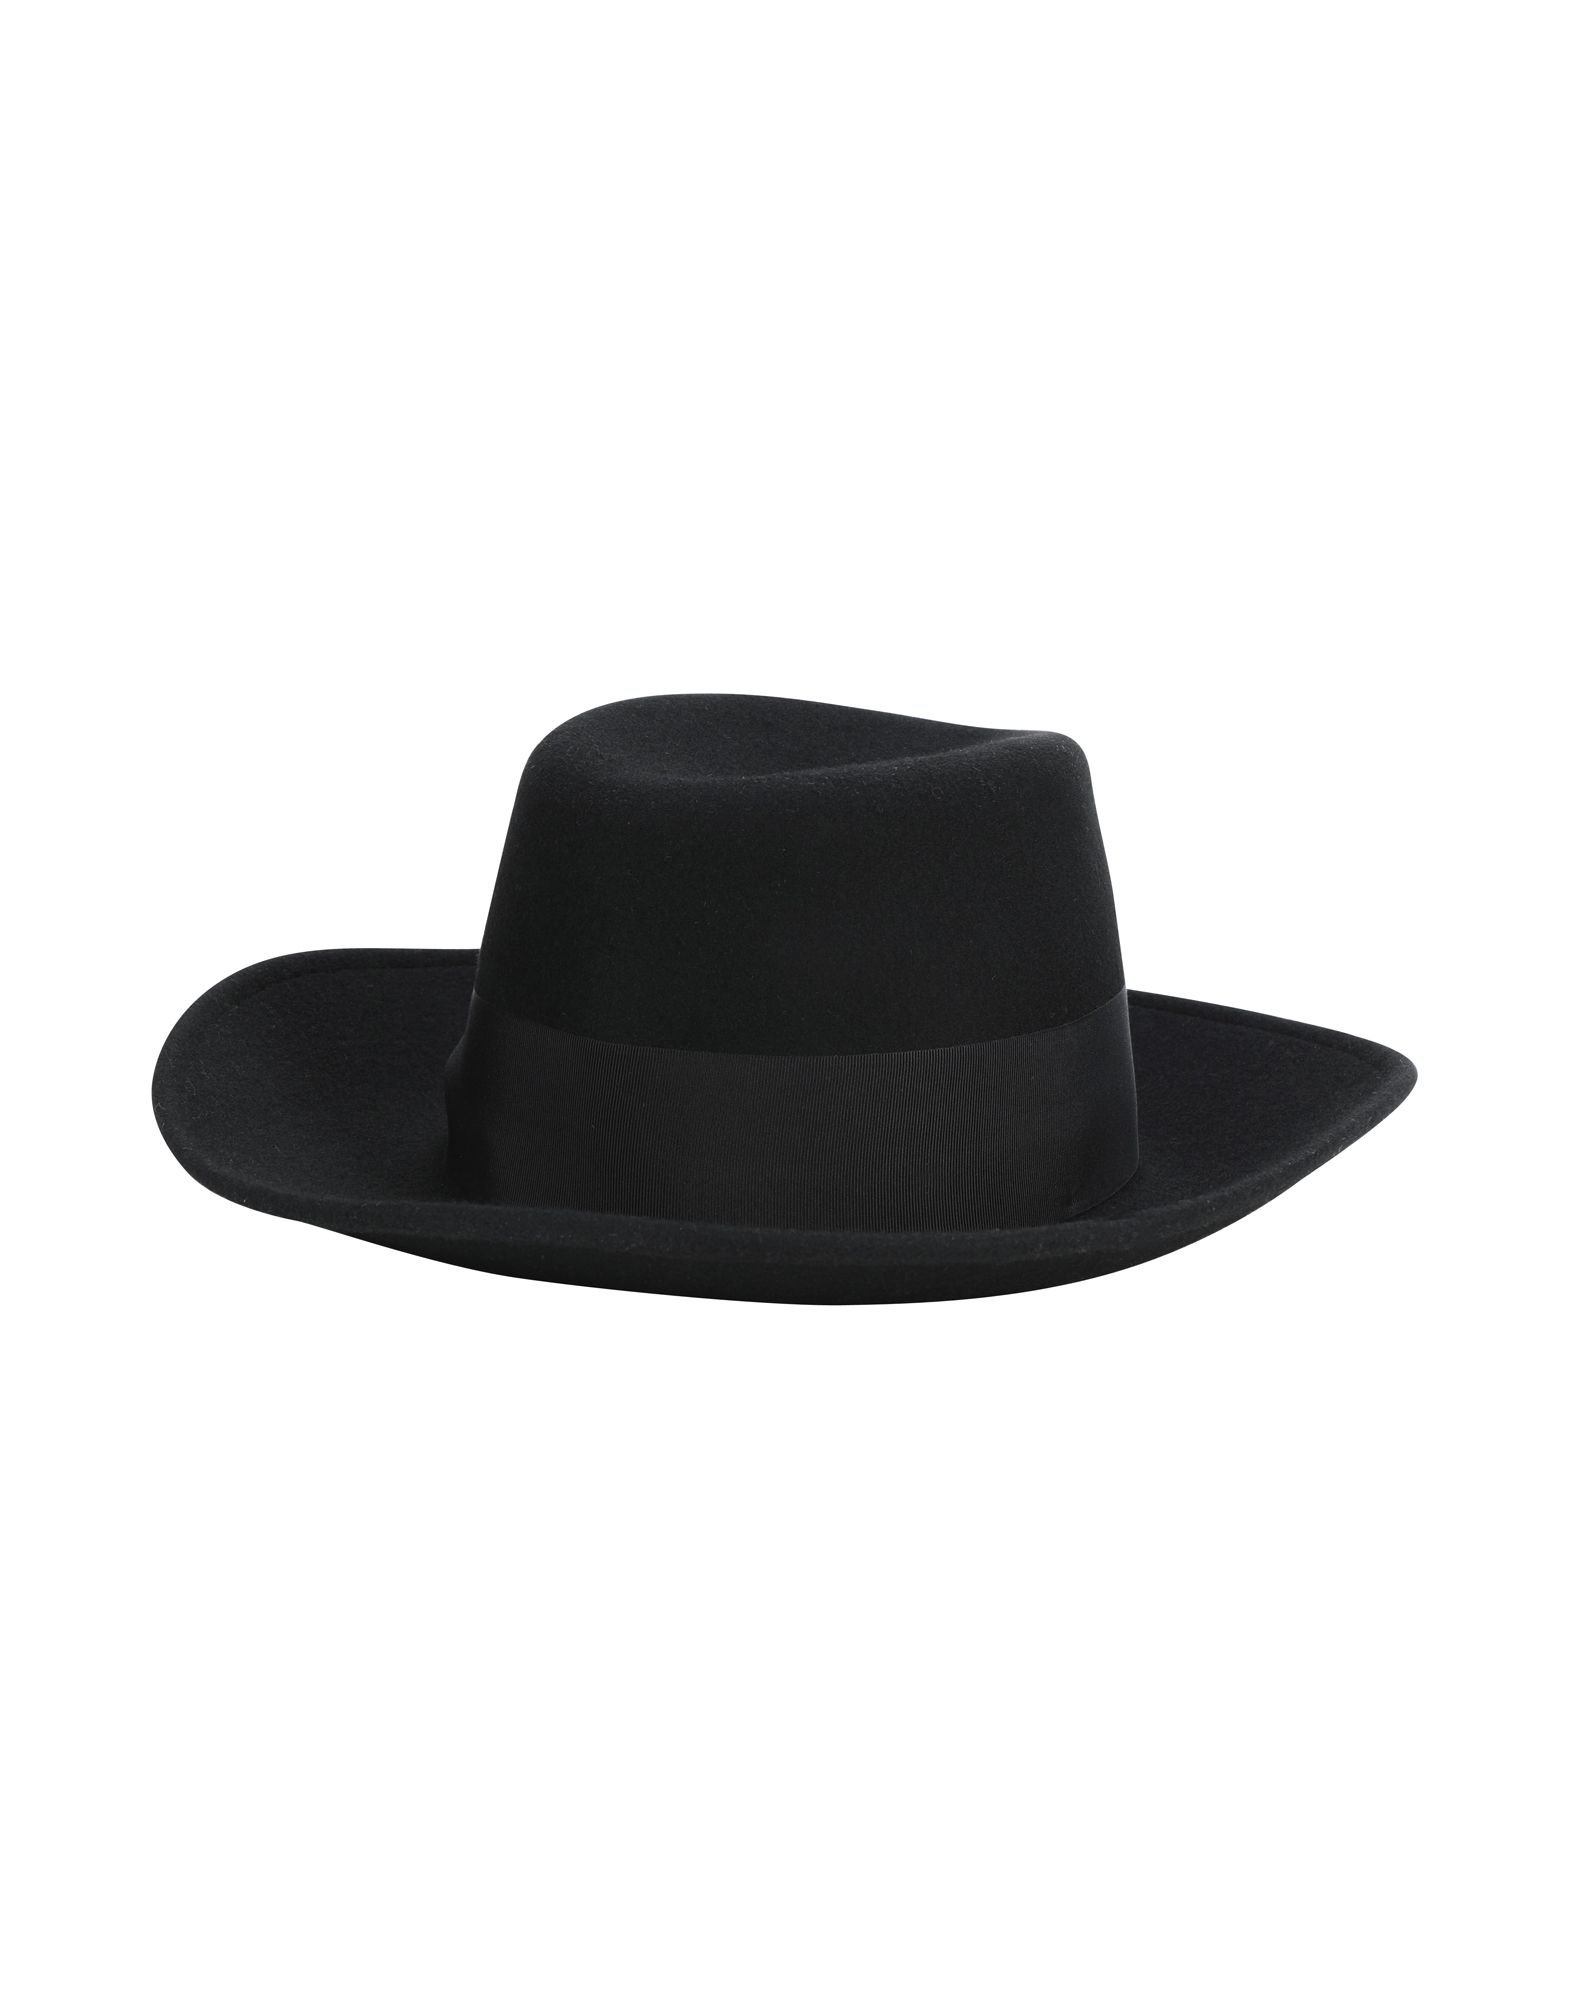 《送料無料》FEDERICA MORETTI レディース 帽子 ブラック M ウール 100%